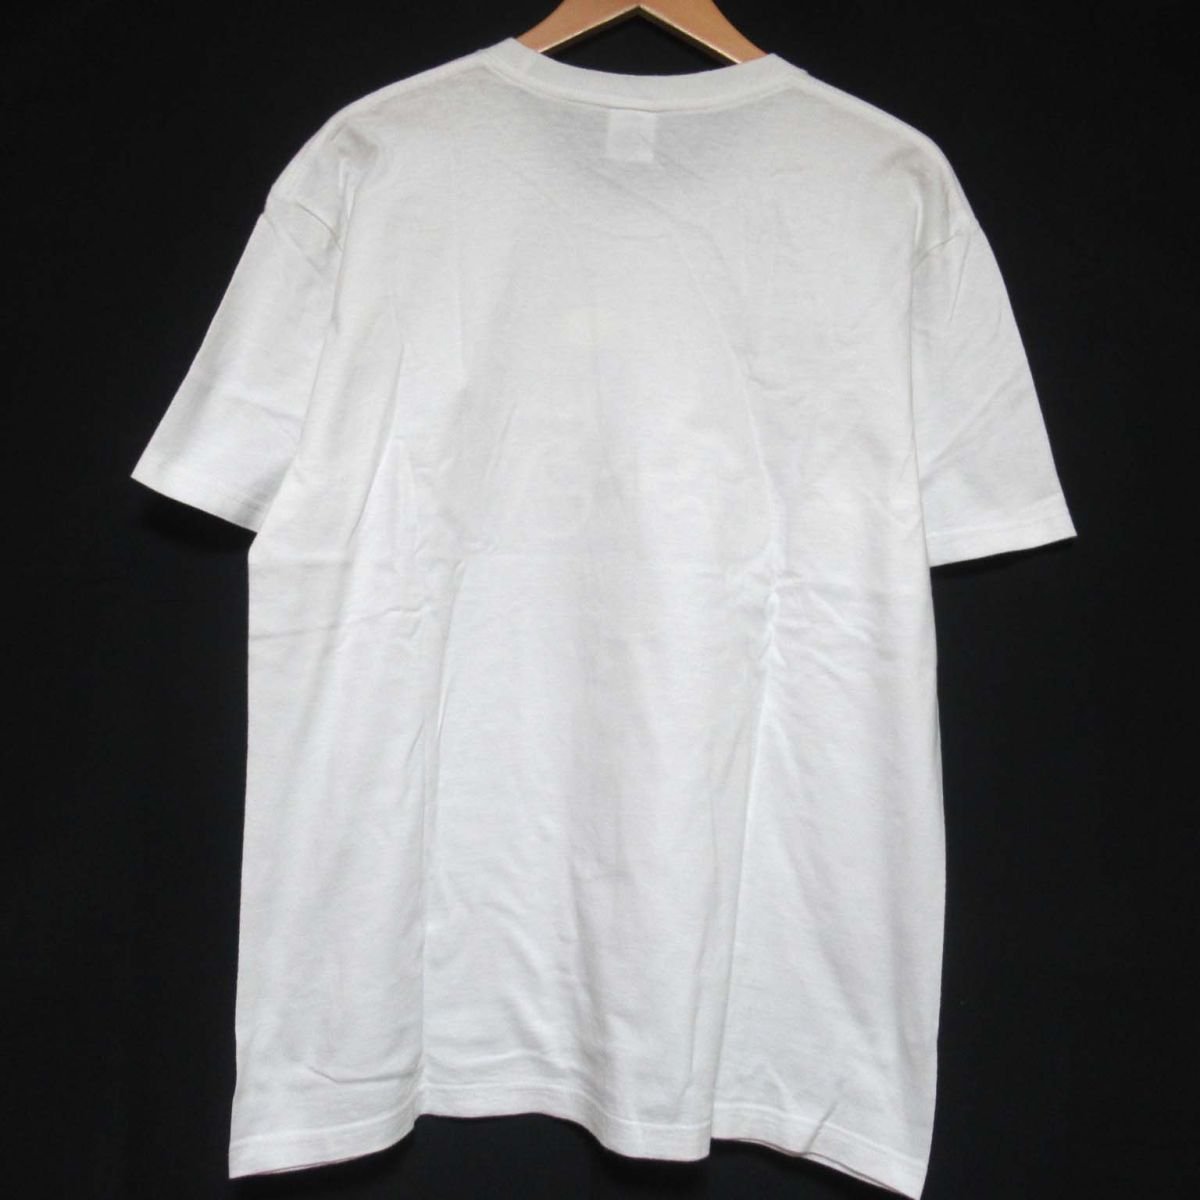 クリーニング済 美品 18SS Supreme シュプリーム Tentacles Tee タコ オクトパス プリント クルーネック 半袖 Tシャツ Mサイズ ホワイトの画像2